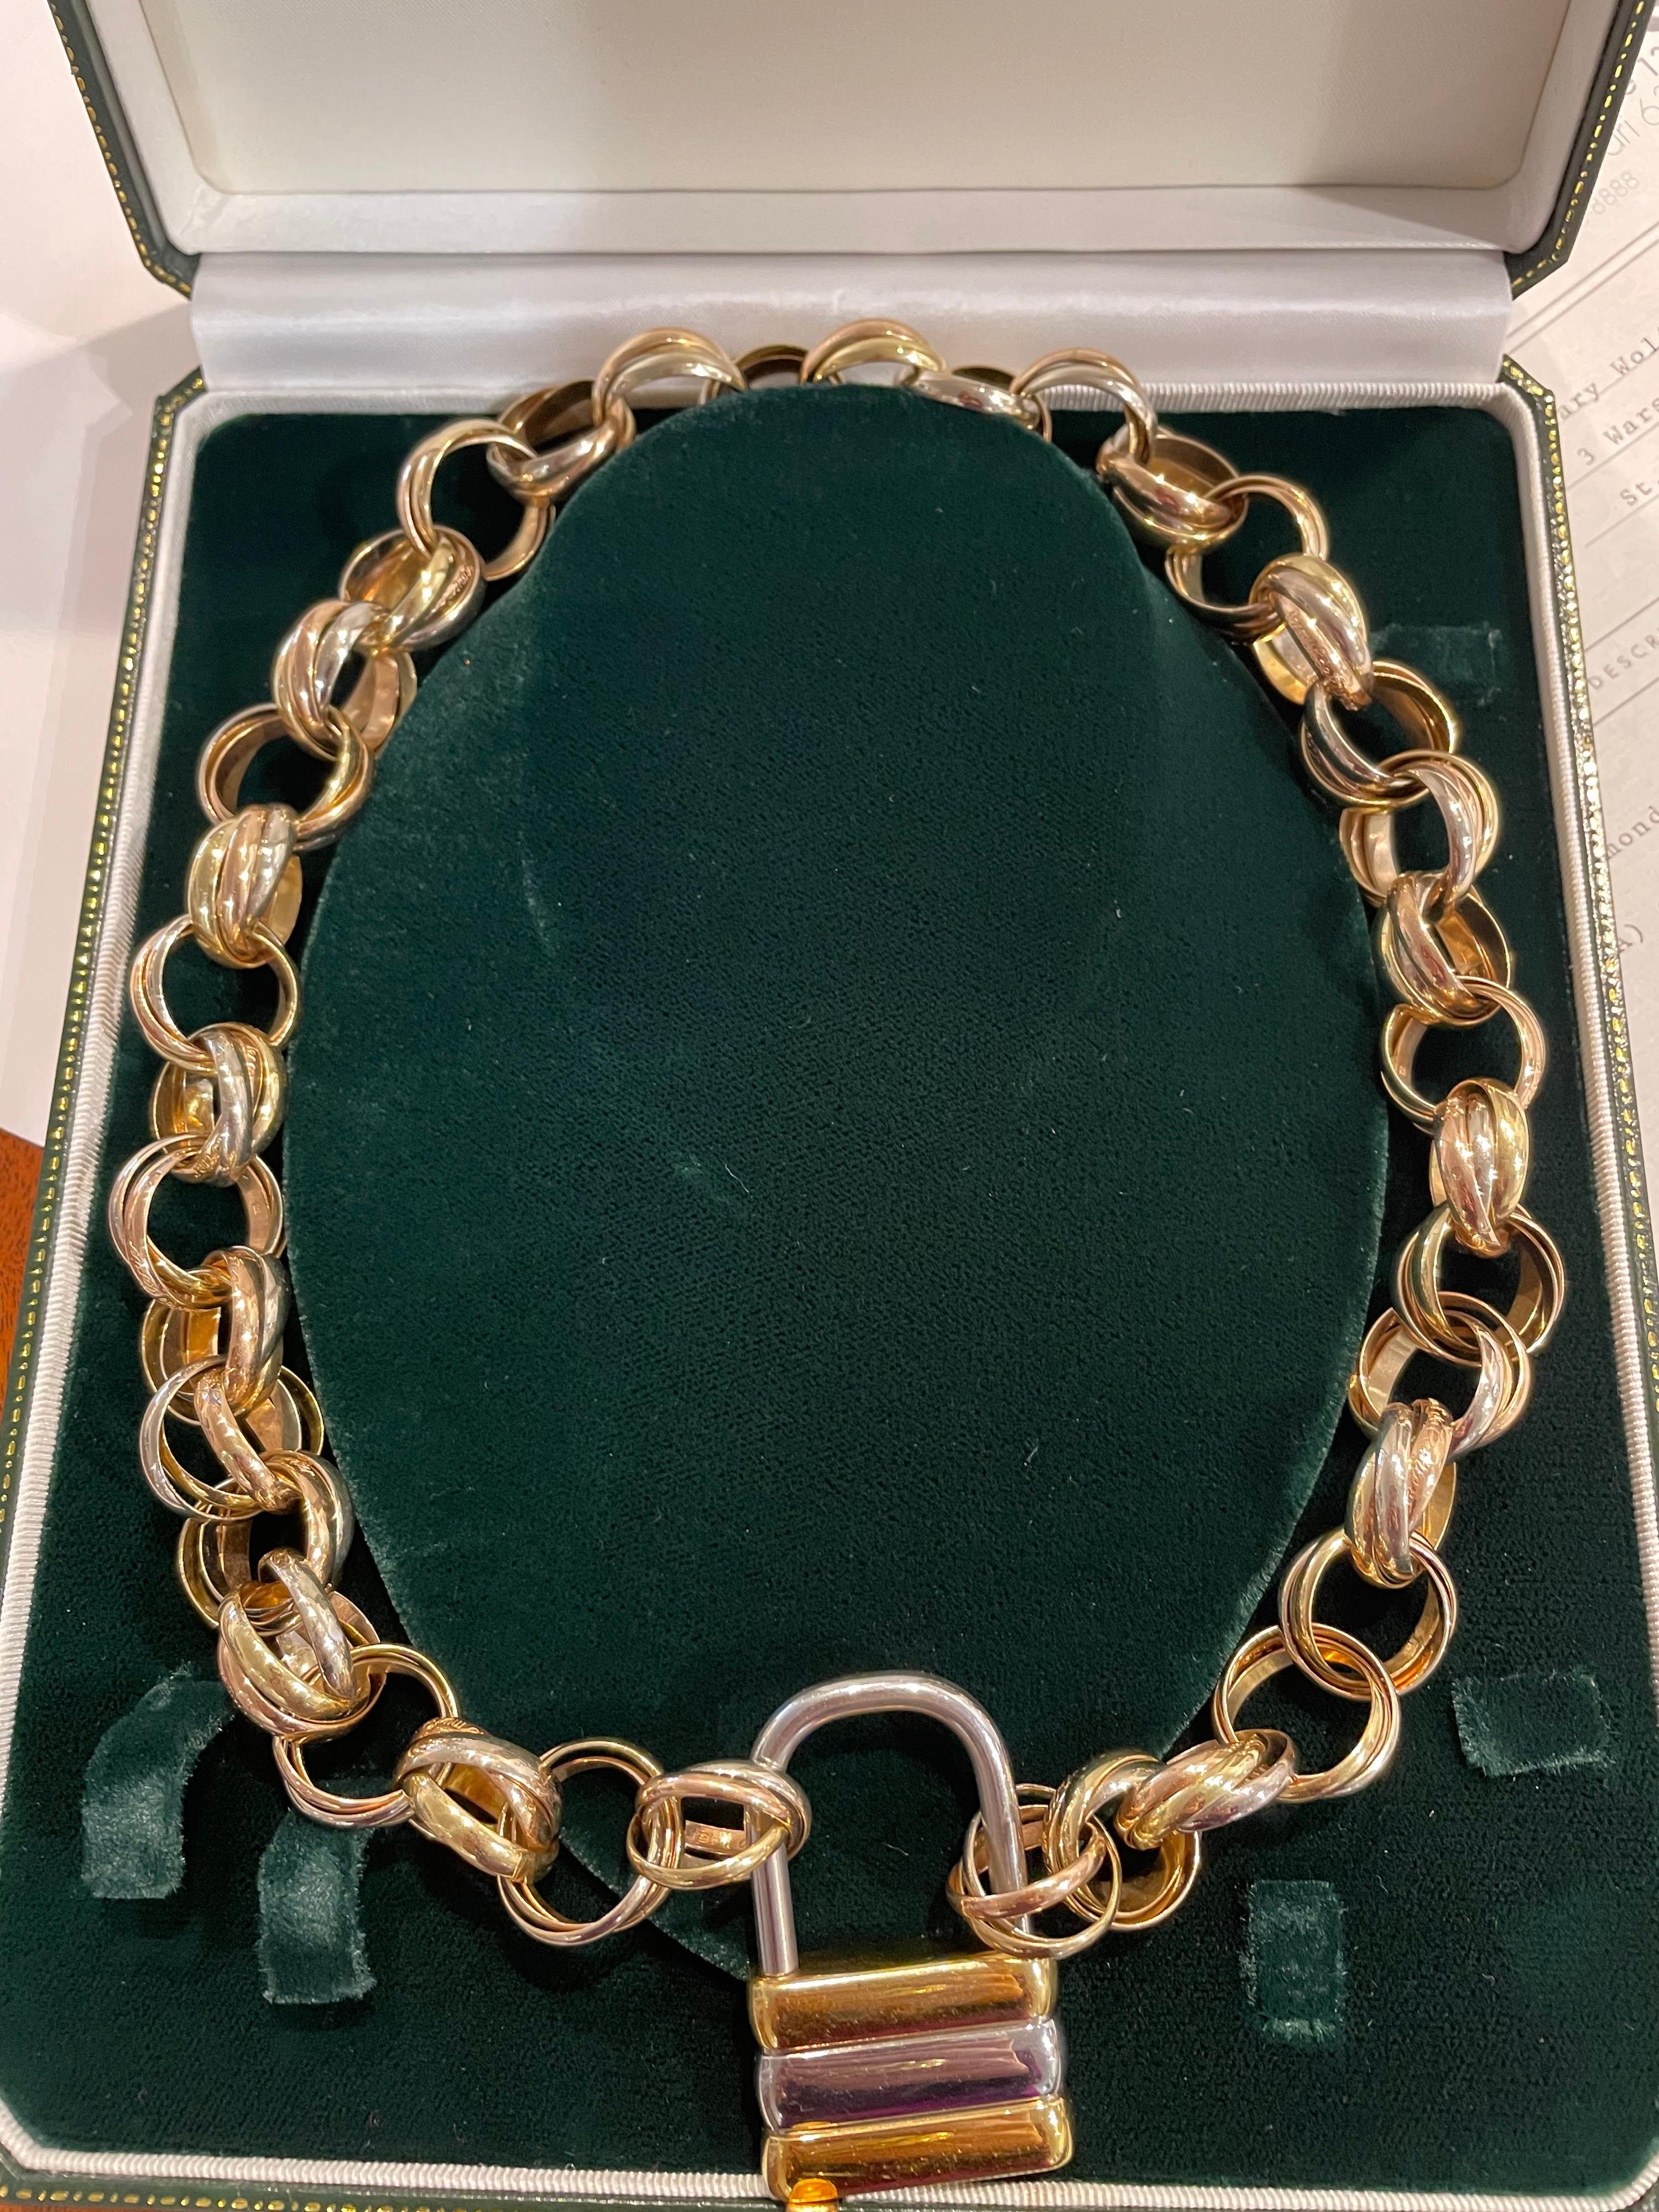 Ce collier unique est composé de 38 anneaux tricolores Cartier 18kt et fermé par un cadenas Cartier. Il est absolument exceptionnel et si facile à porter. Il s'agit d'une pièce exceptionnelle !